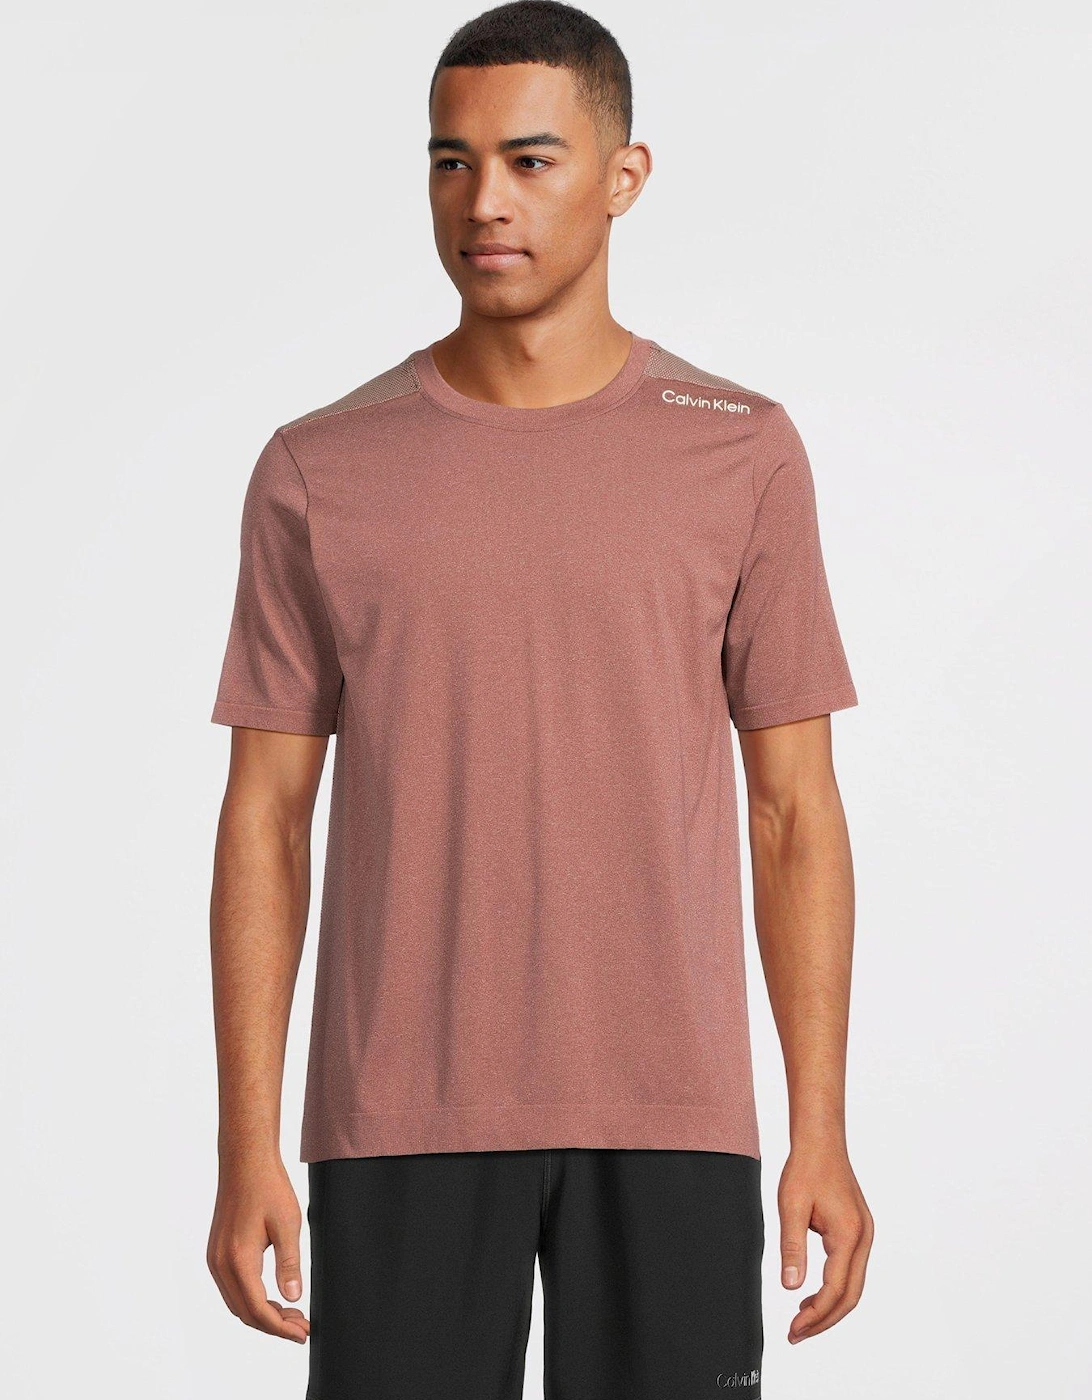 CK Sport Seamless Short Sleeve T-shirt - Mauve, 2 of 1